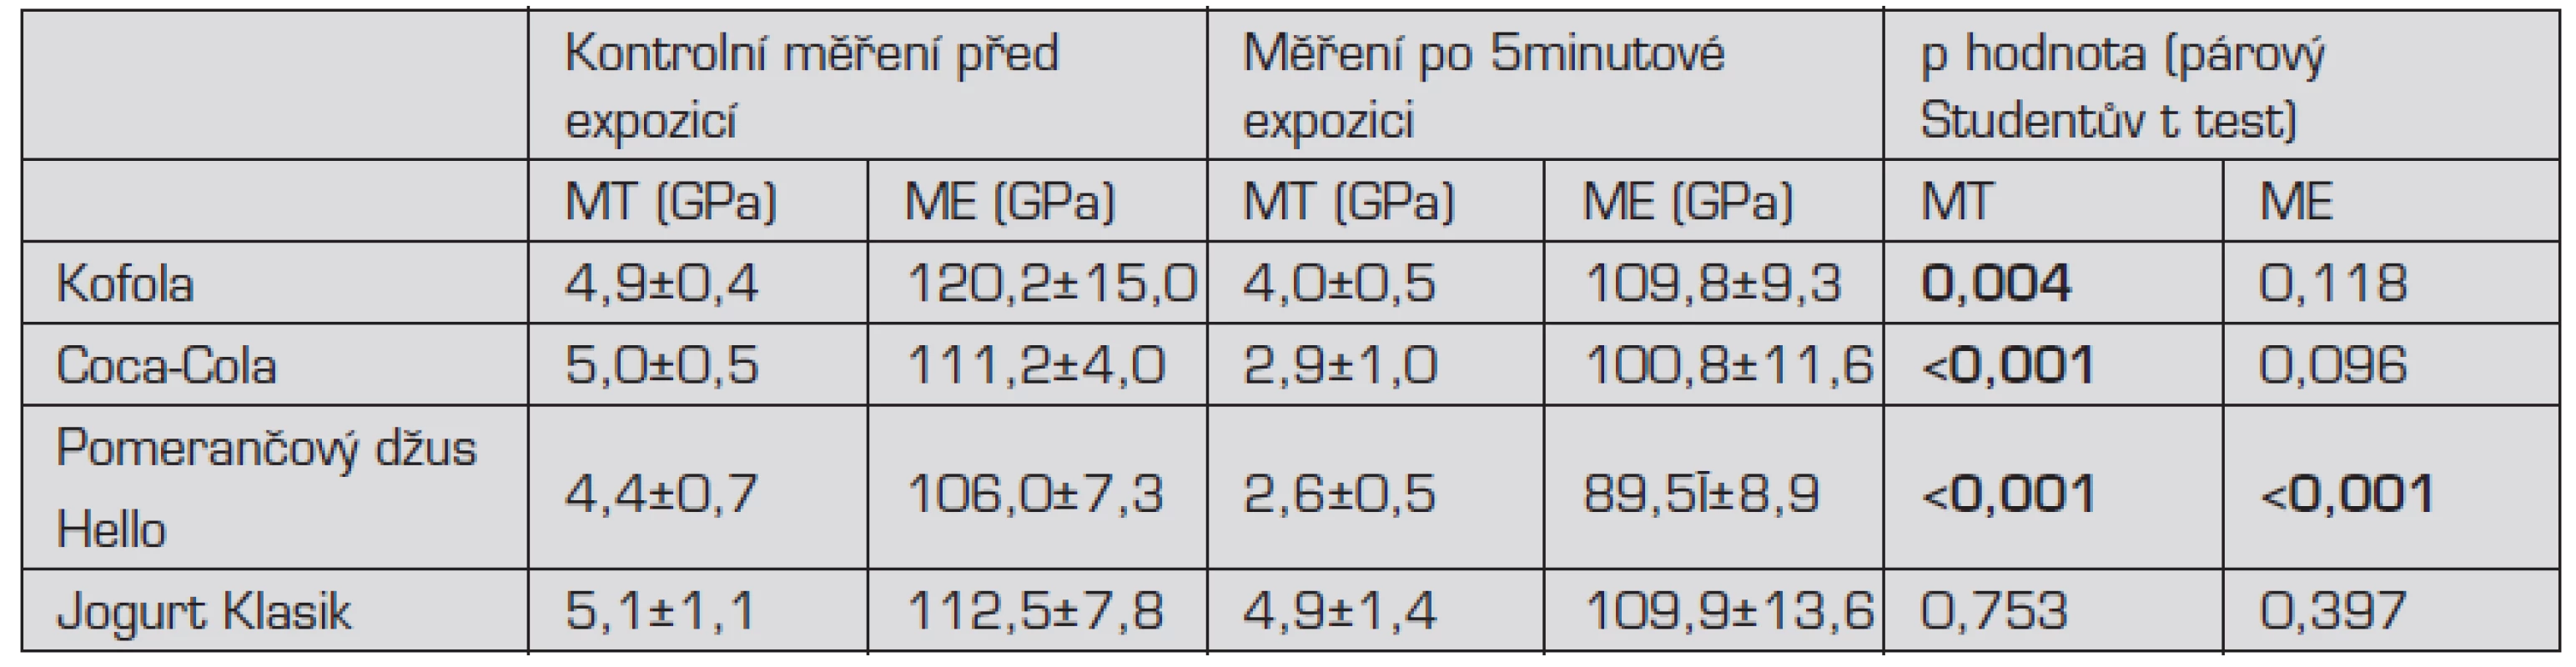 Průměrné hodnoty mikrotvrdosti a modulu elasticity sklovinných vzorků před a po expozici v nápojích a jogurtu